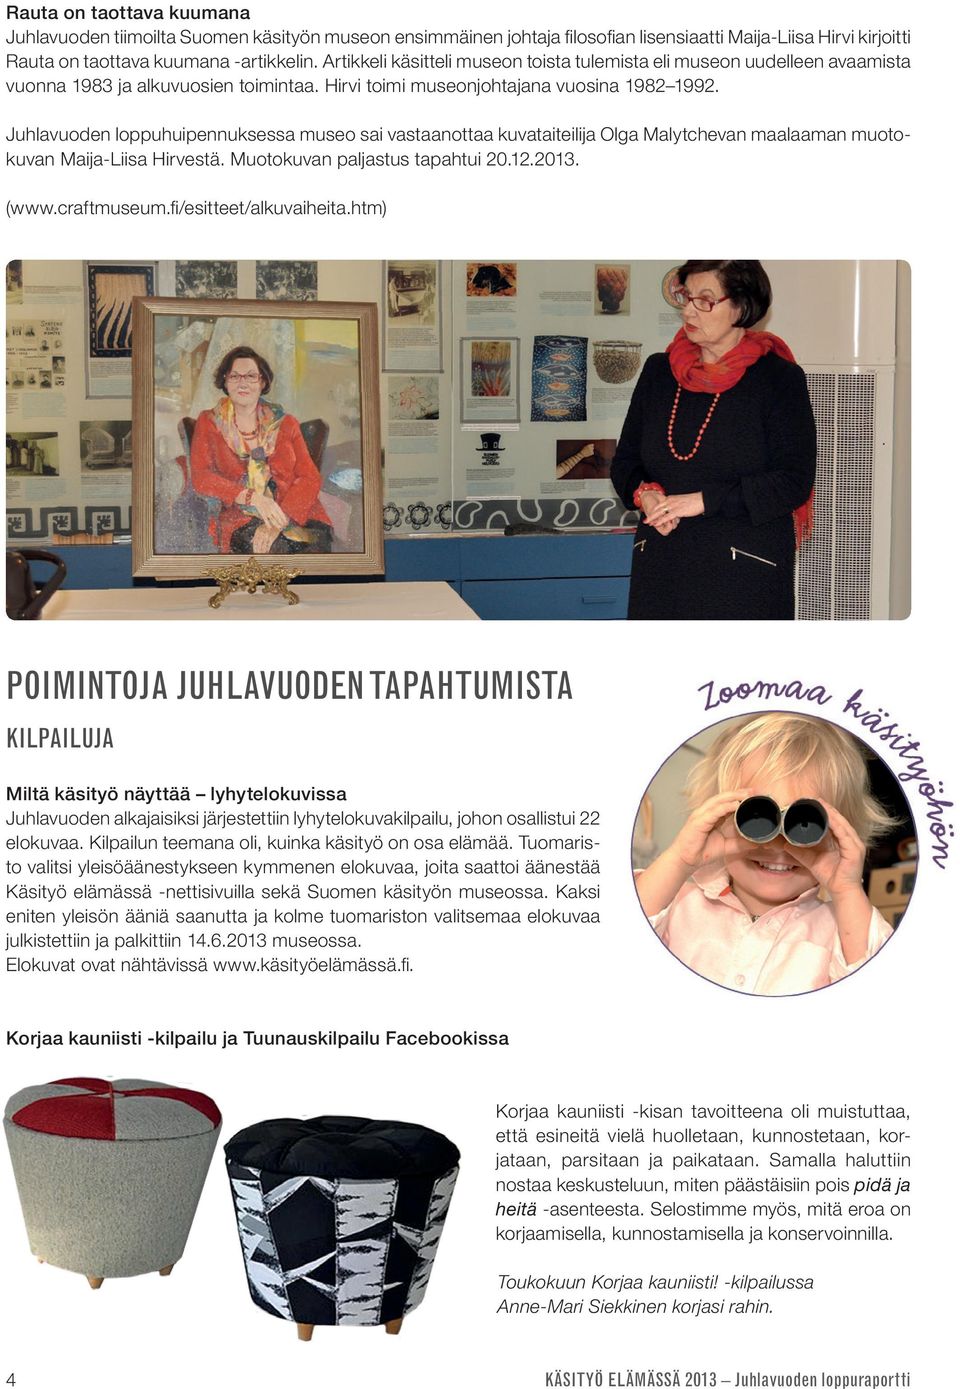 Juhlavuoden loppuhuipennuksessa museo sai vastaanottaa kuvataiteilija Olga Malytchevan maalaaman muotokuvan Maija-Liisa Hirvestä. Muotokuvan paljastus tapahtui 20.12.2013. (www.craftmuseum.